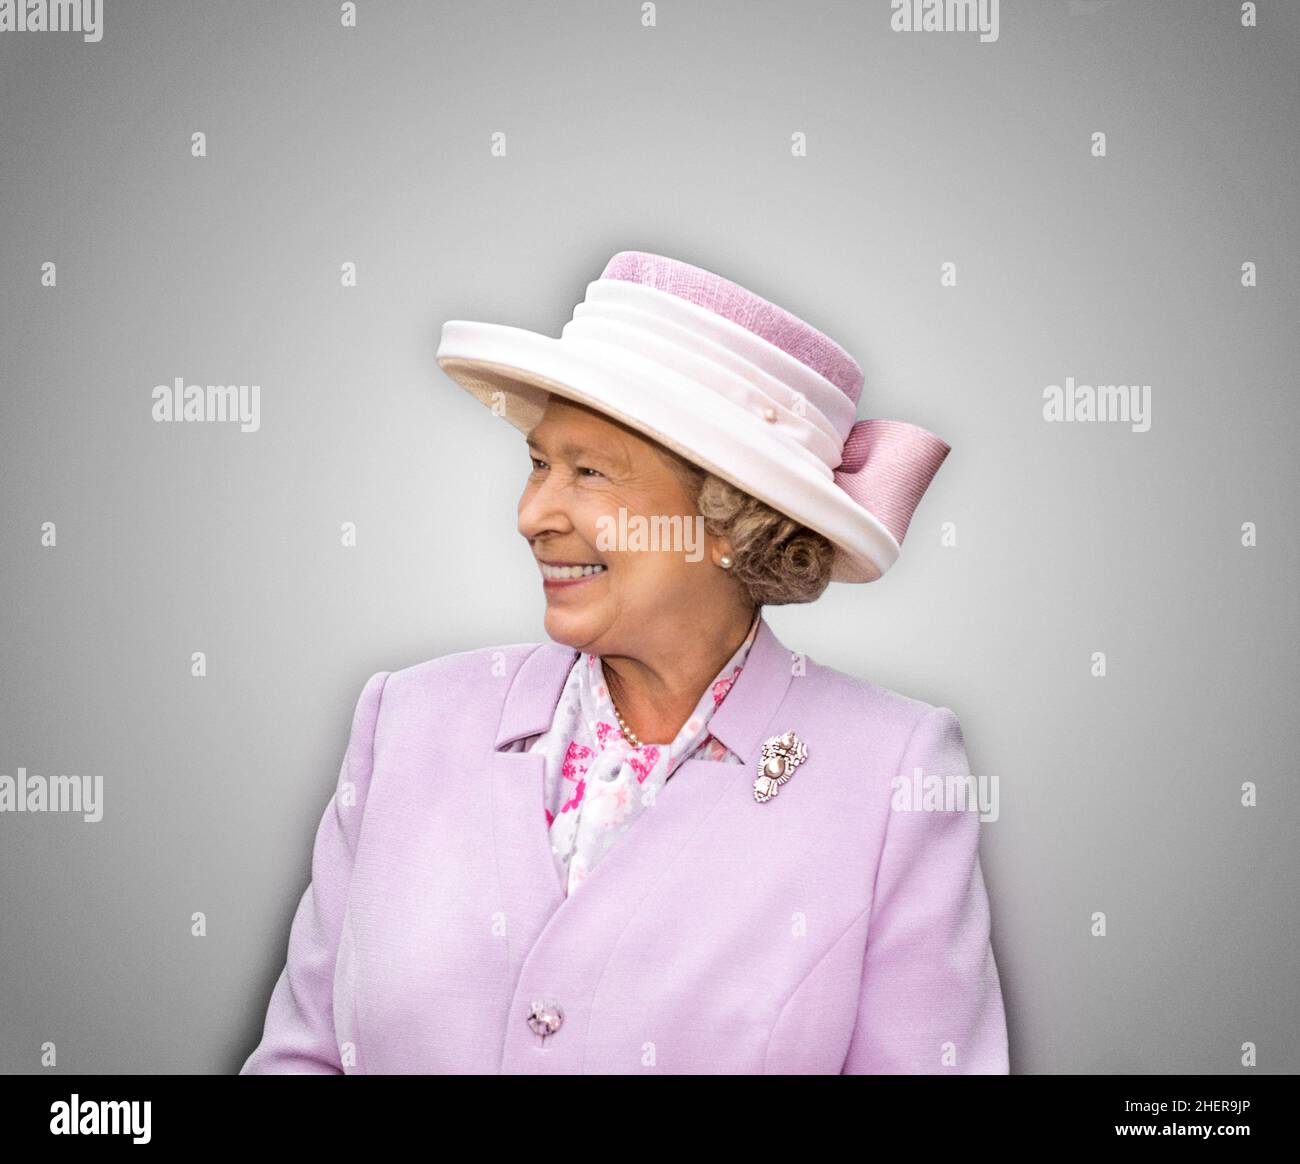 QUEEN ELIZABETH II Portrait coupe souriante demi-longueur portrait d'un sourire heureux trois quart de vue HRH la reine Elizabeth II coupe sur un fond neutre Uni commande image photographiée par © Ian Shaw Banque D'Images